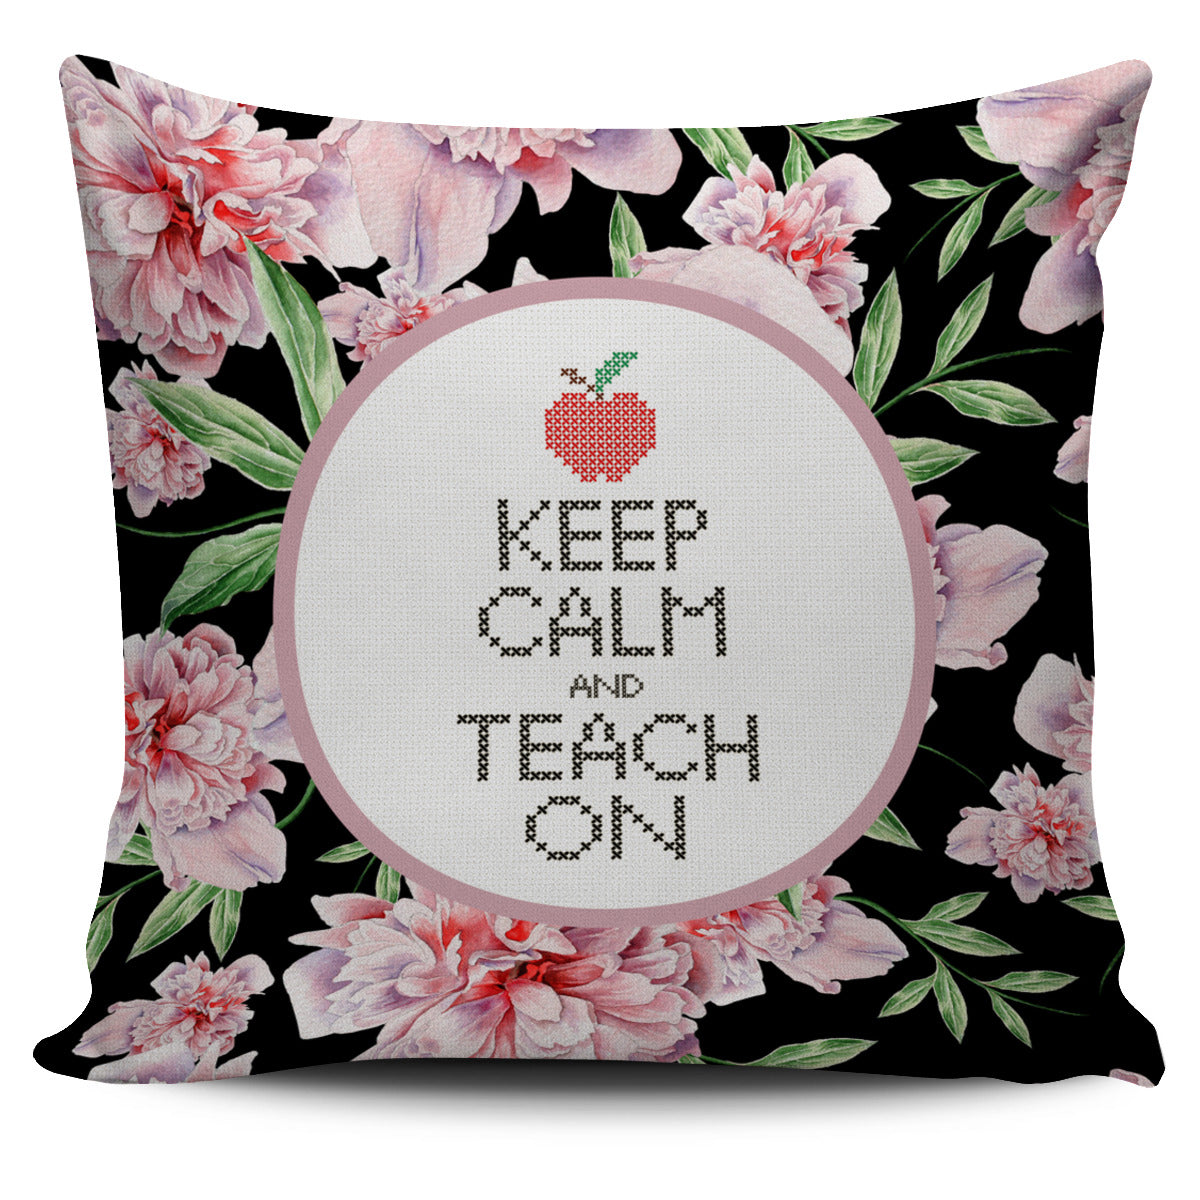 Teach On Pillow Cover